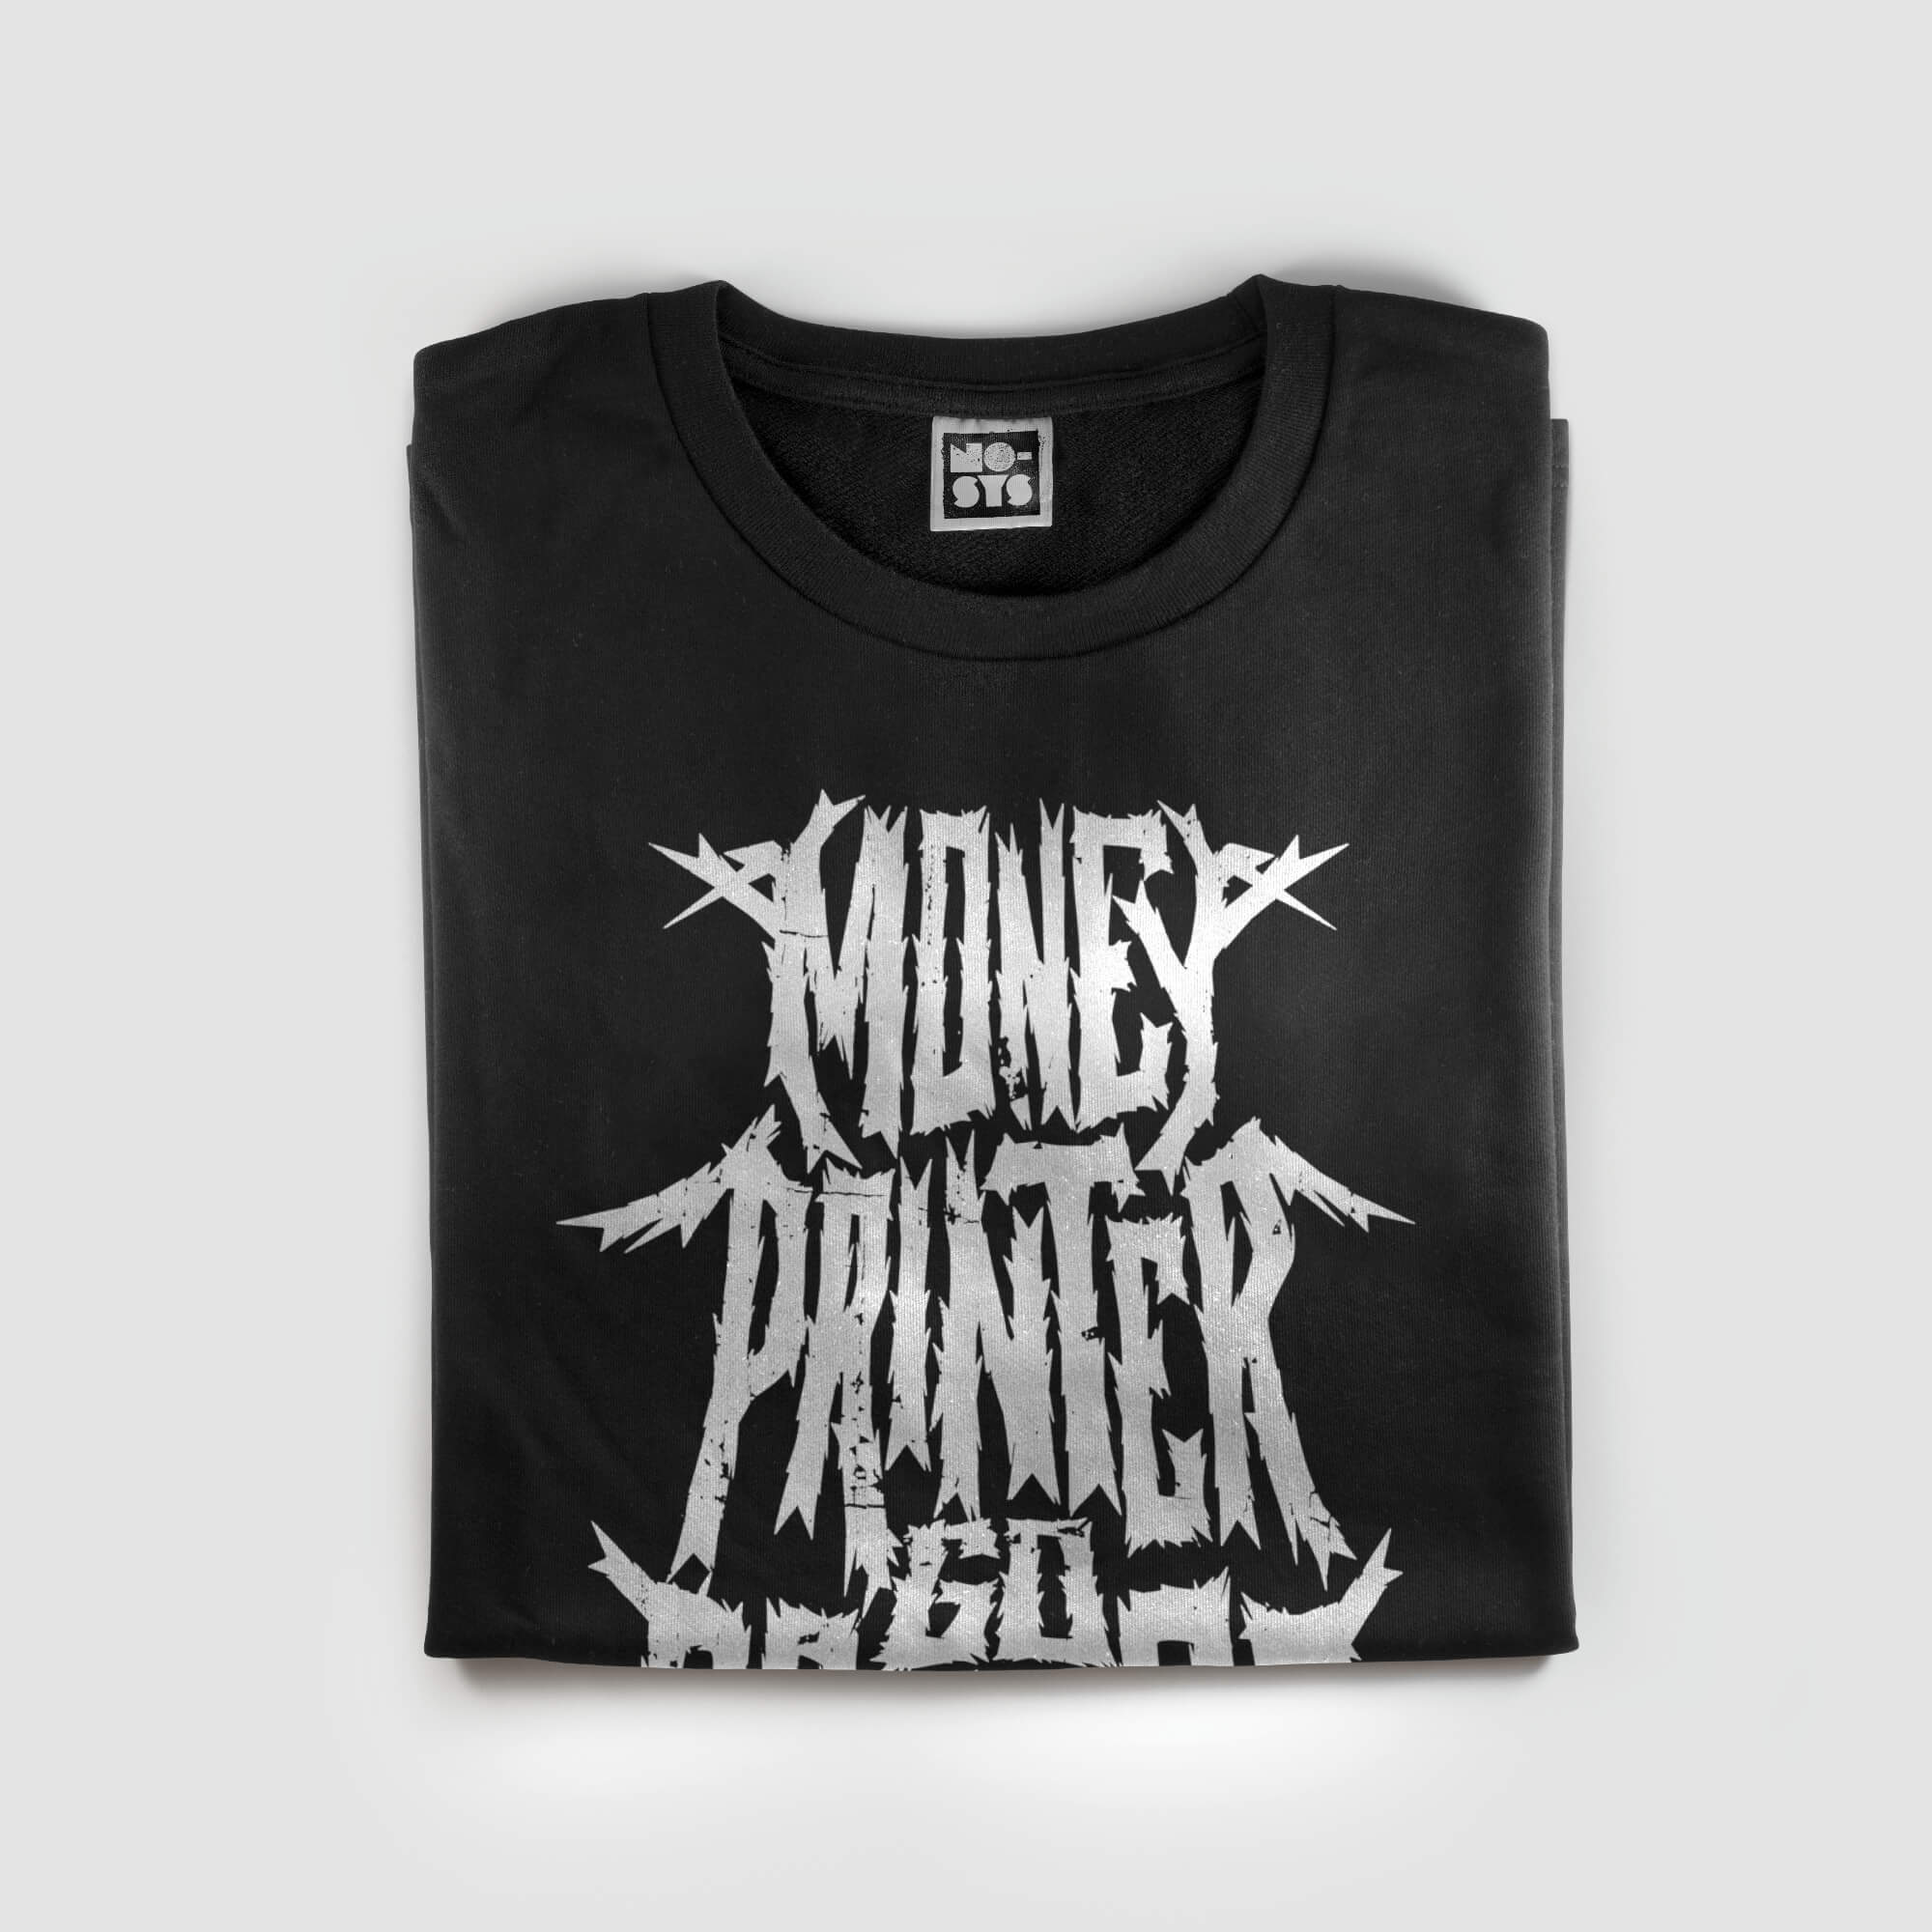 Money Printer Go BRRRR